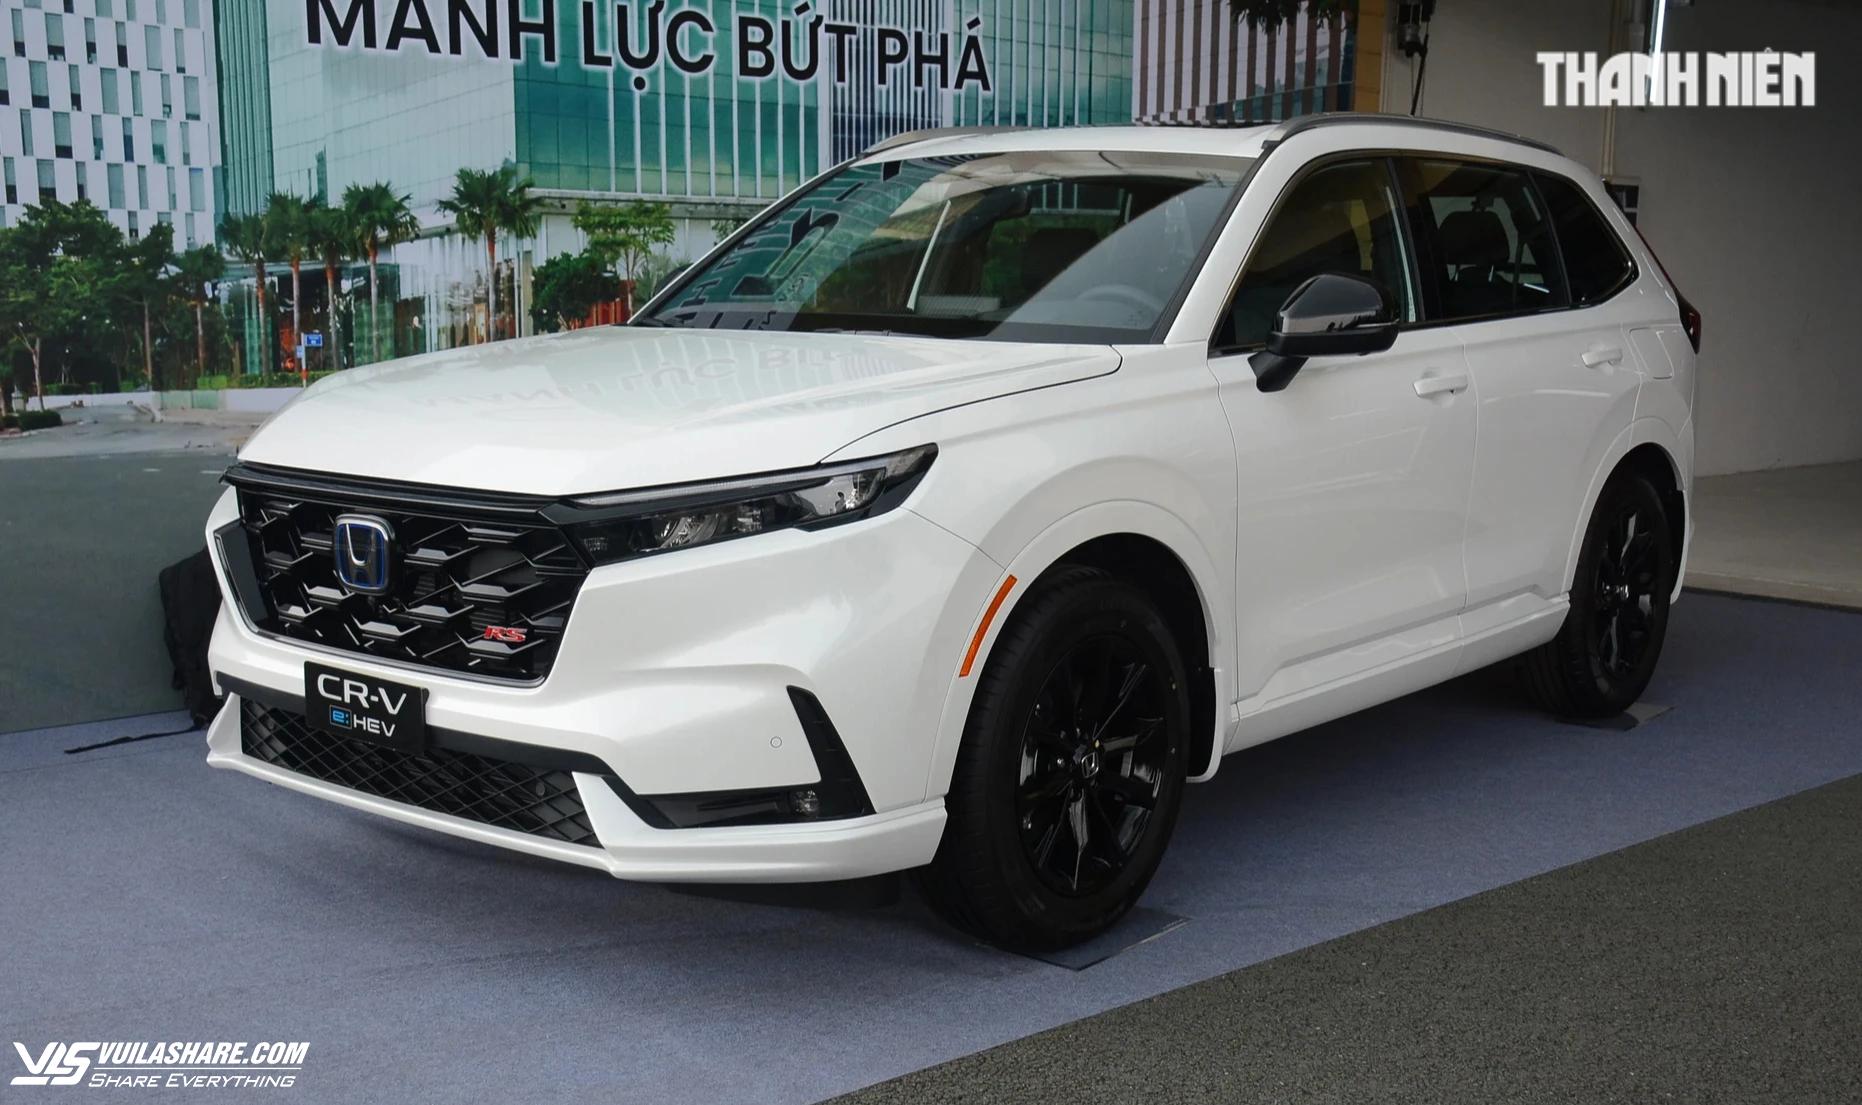 Honda CR-V e:HEV bị tước ngôi vương, người Việt mua sắm ô tô hybrid ngày càng nhiều- Ảnh 1.